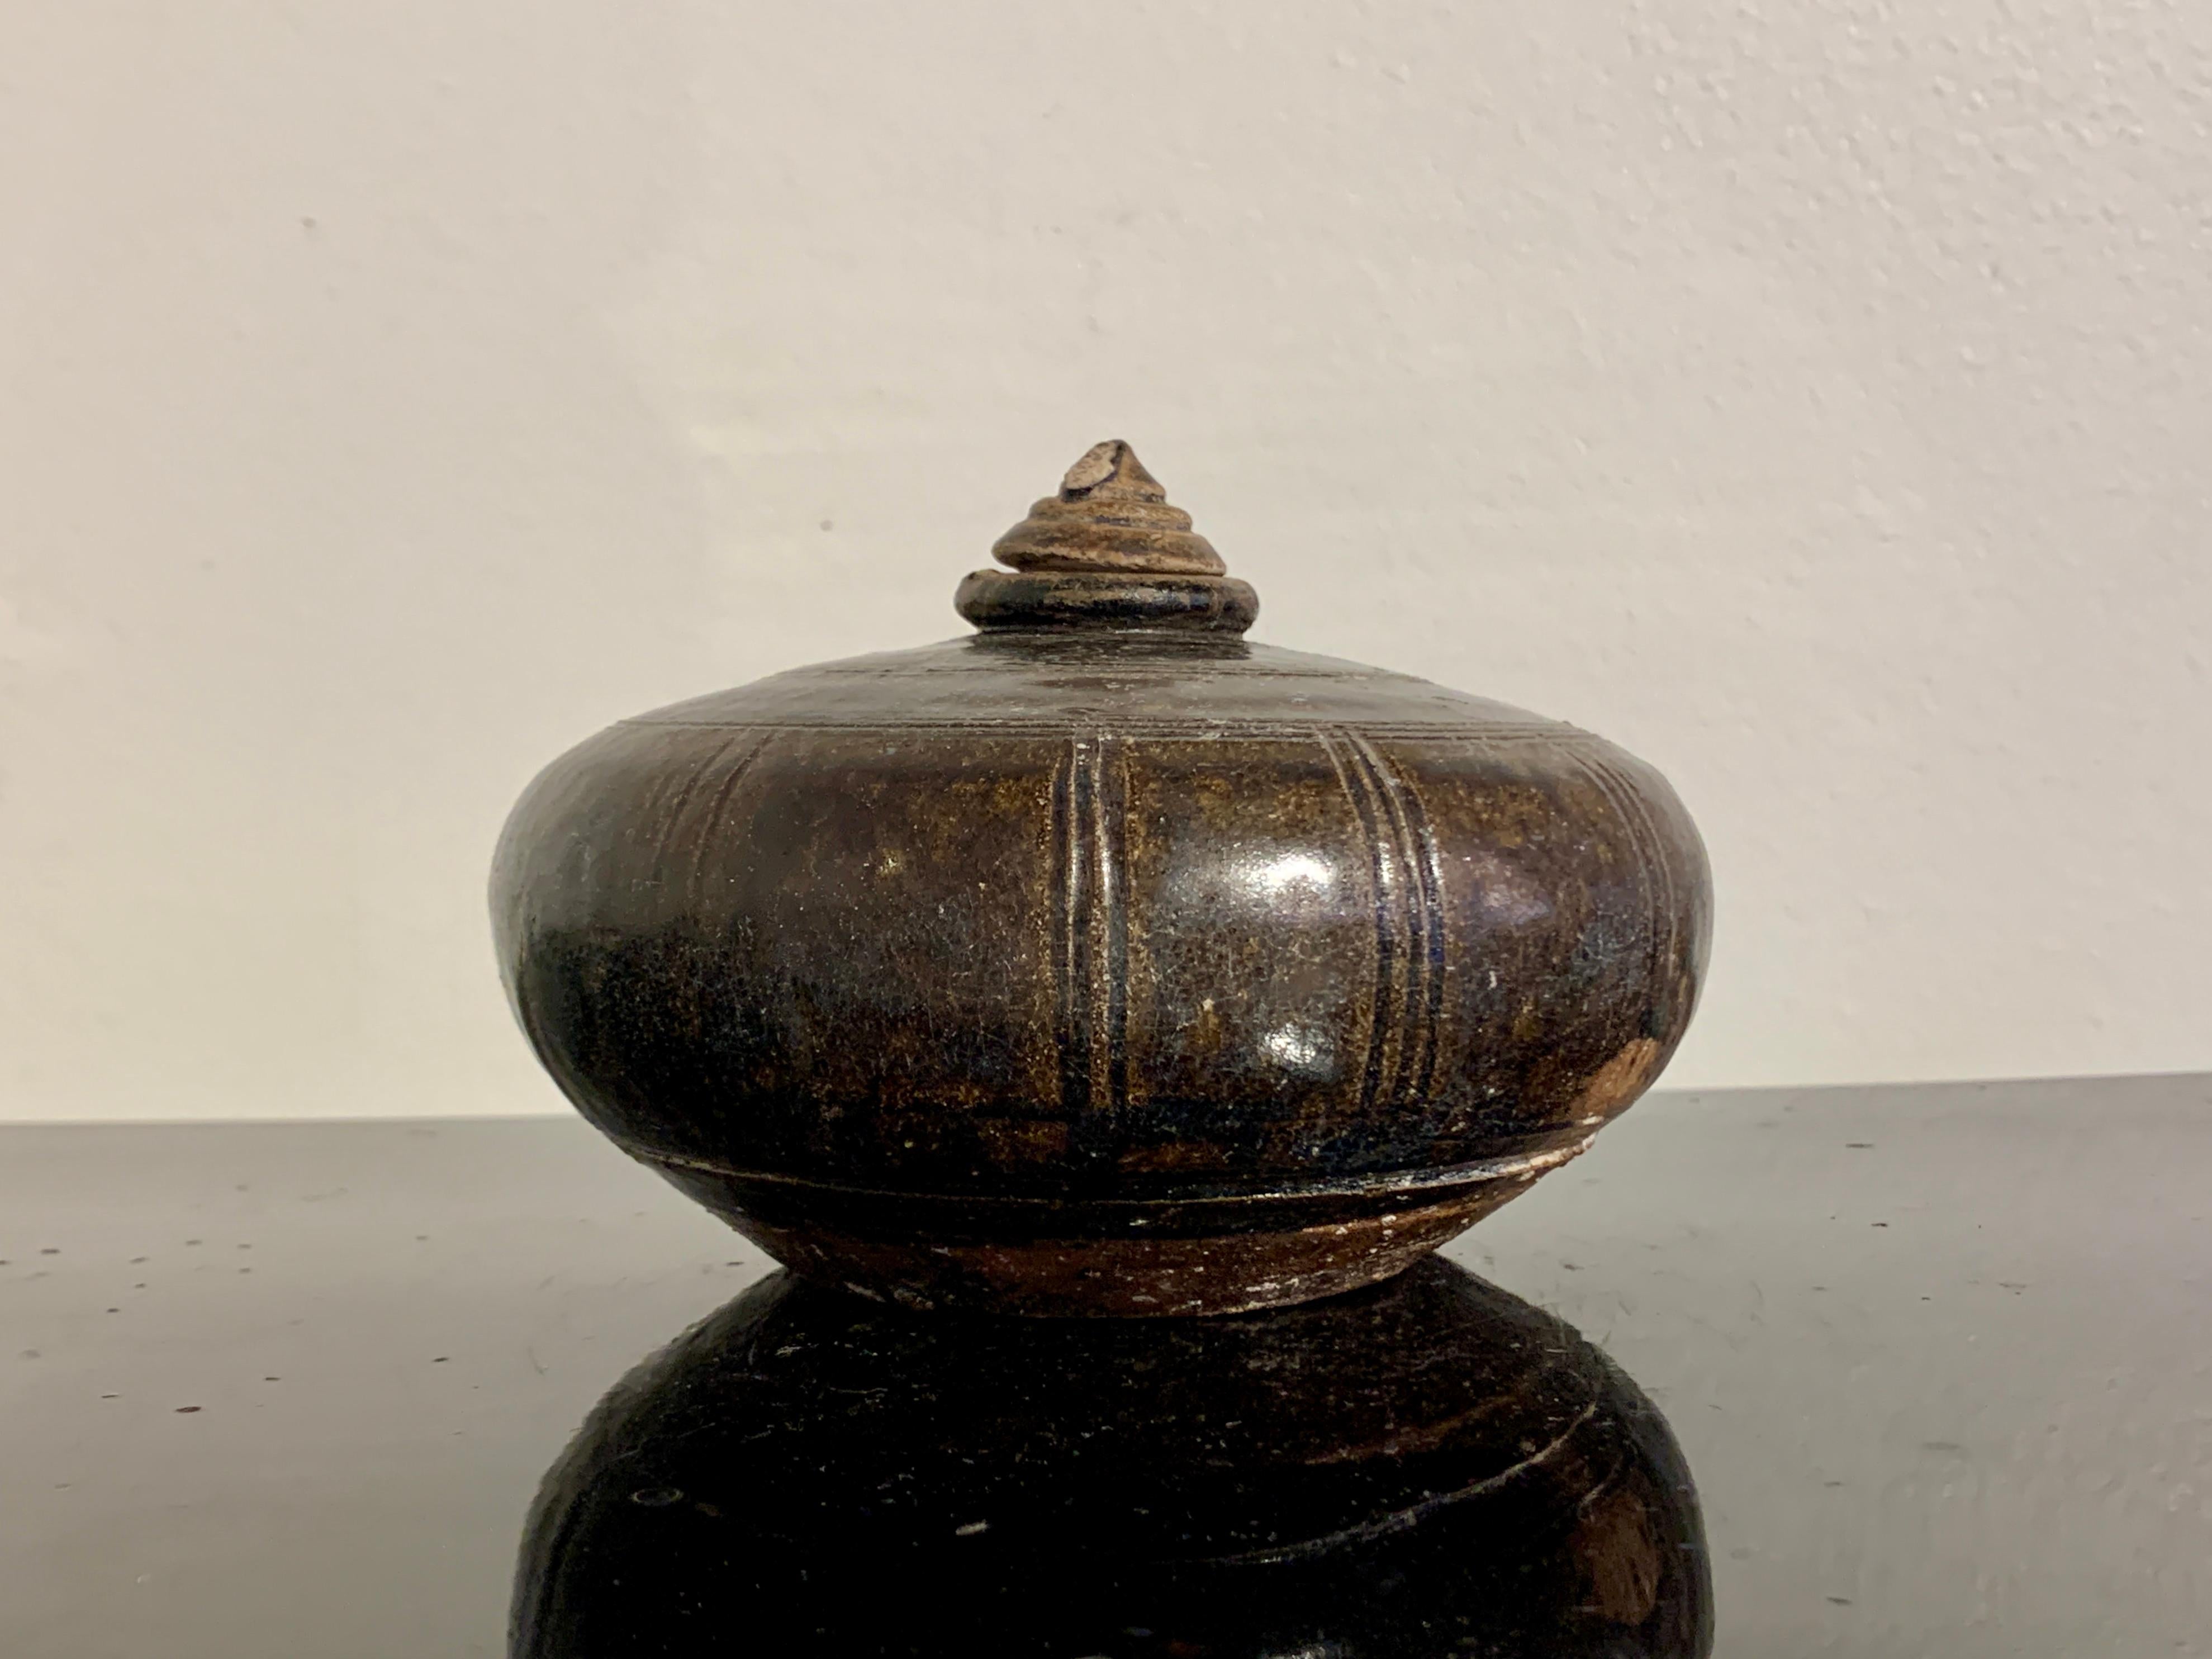 Ein attraktiver kleiner Honig- oder Öltopf aus braun glasiertem Khmer-Steinzeug, 12. bis 14. Jahrhundert, Kambodscha.

Der kleine Topf hat eine komprimierte kugelförmige Form und ist mit einer tiefbraunen Glasur mit gelben Untertönen glasiert.